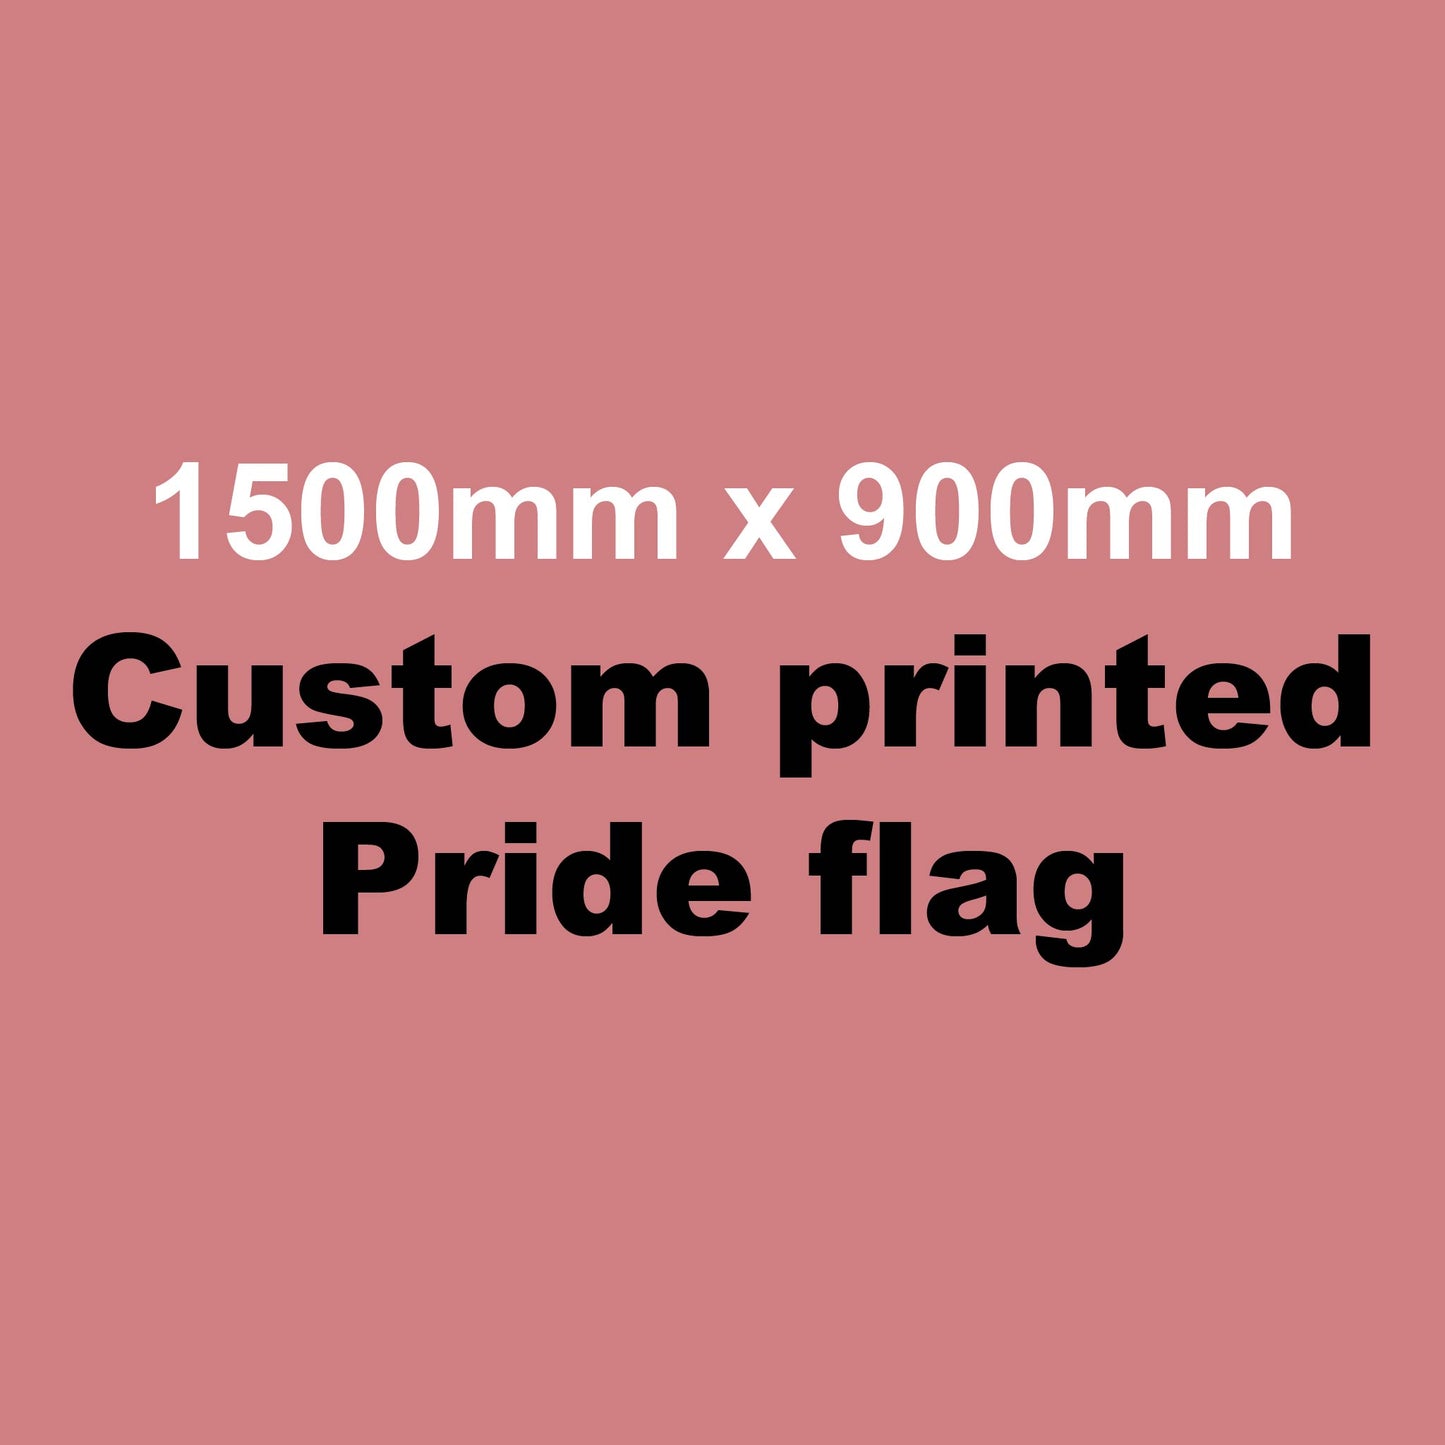 Custom Made Pride Flag: 1500mm x 900mm